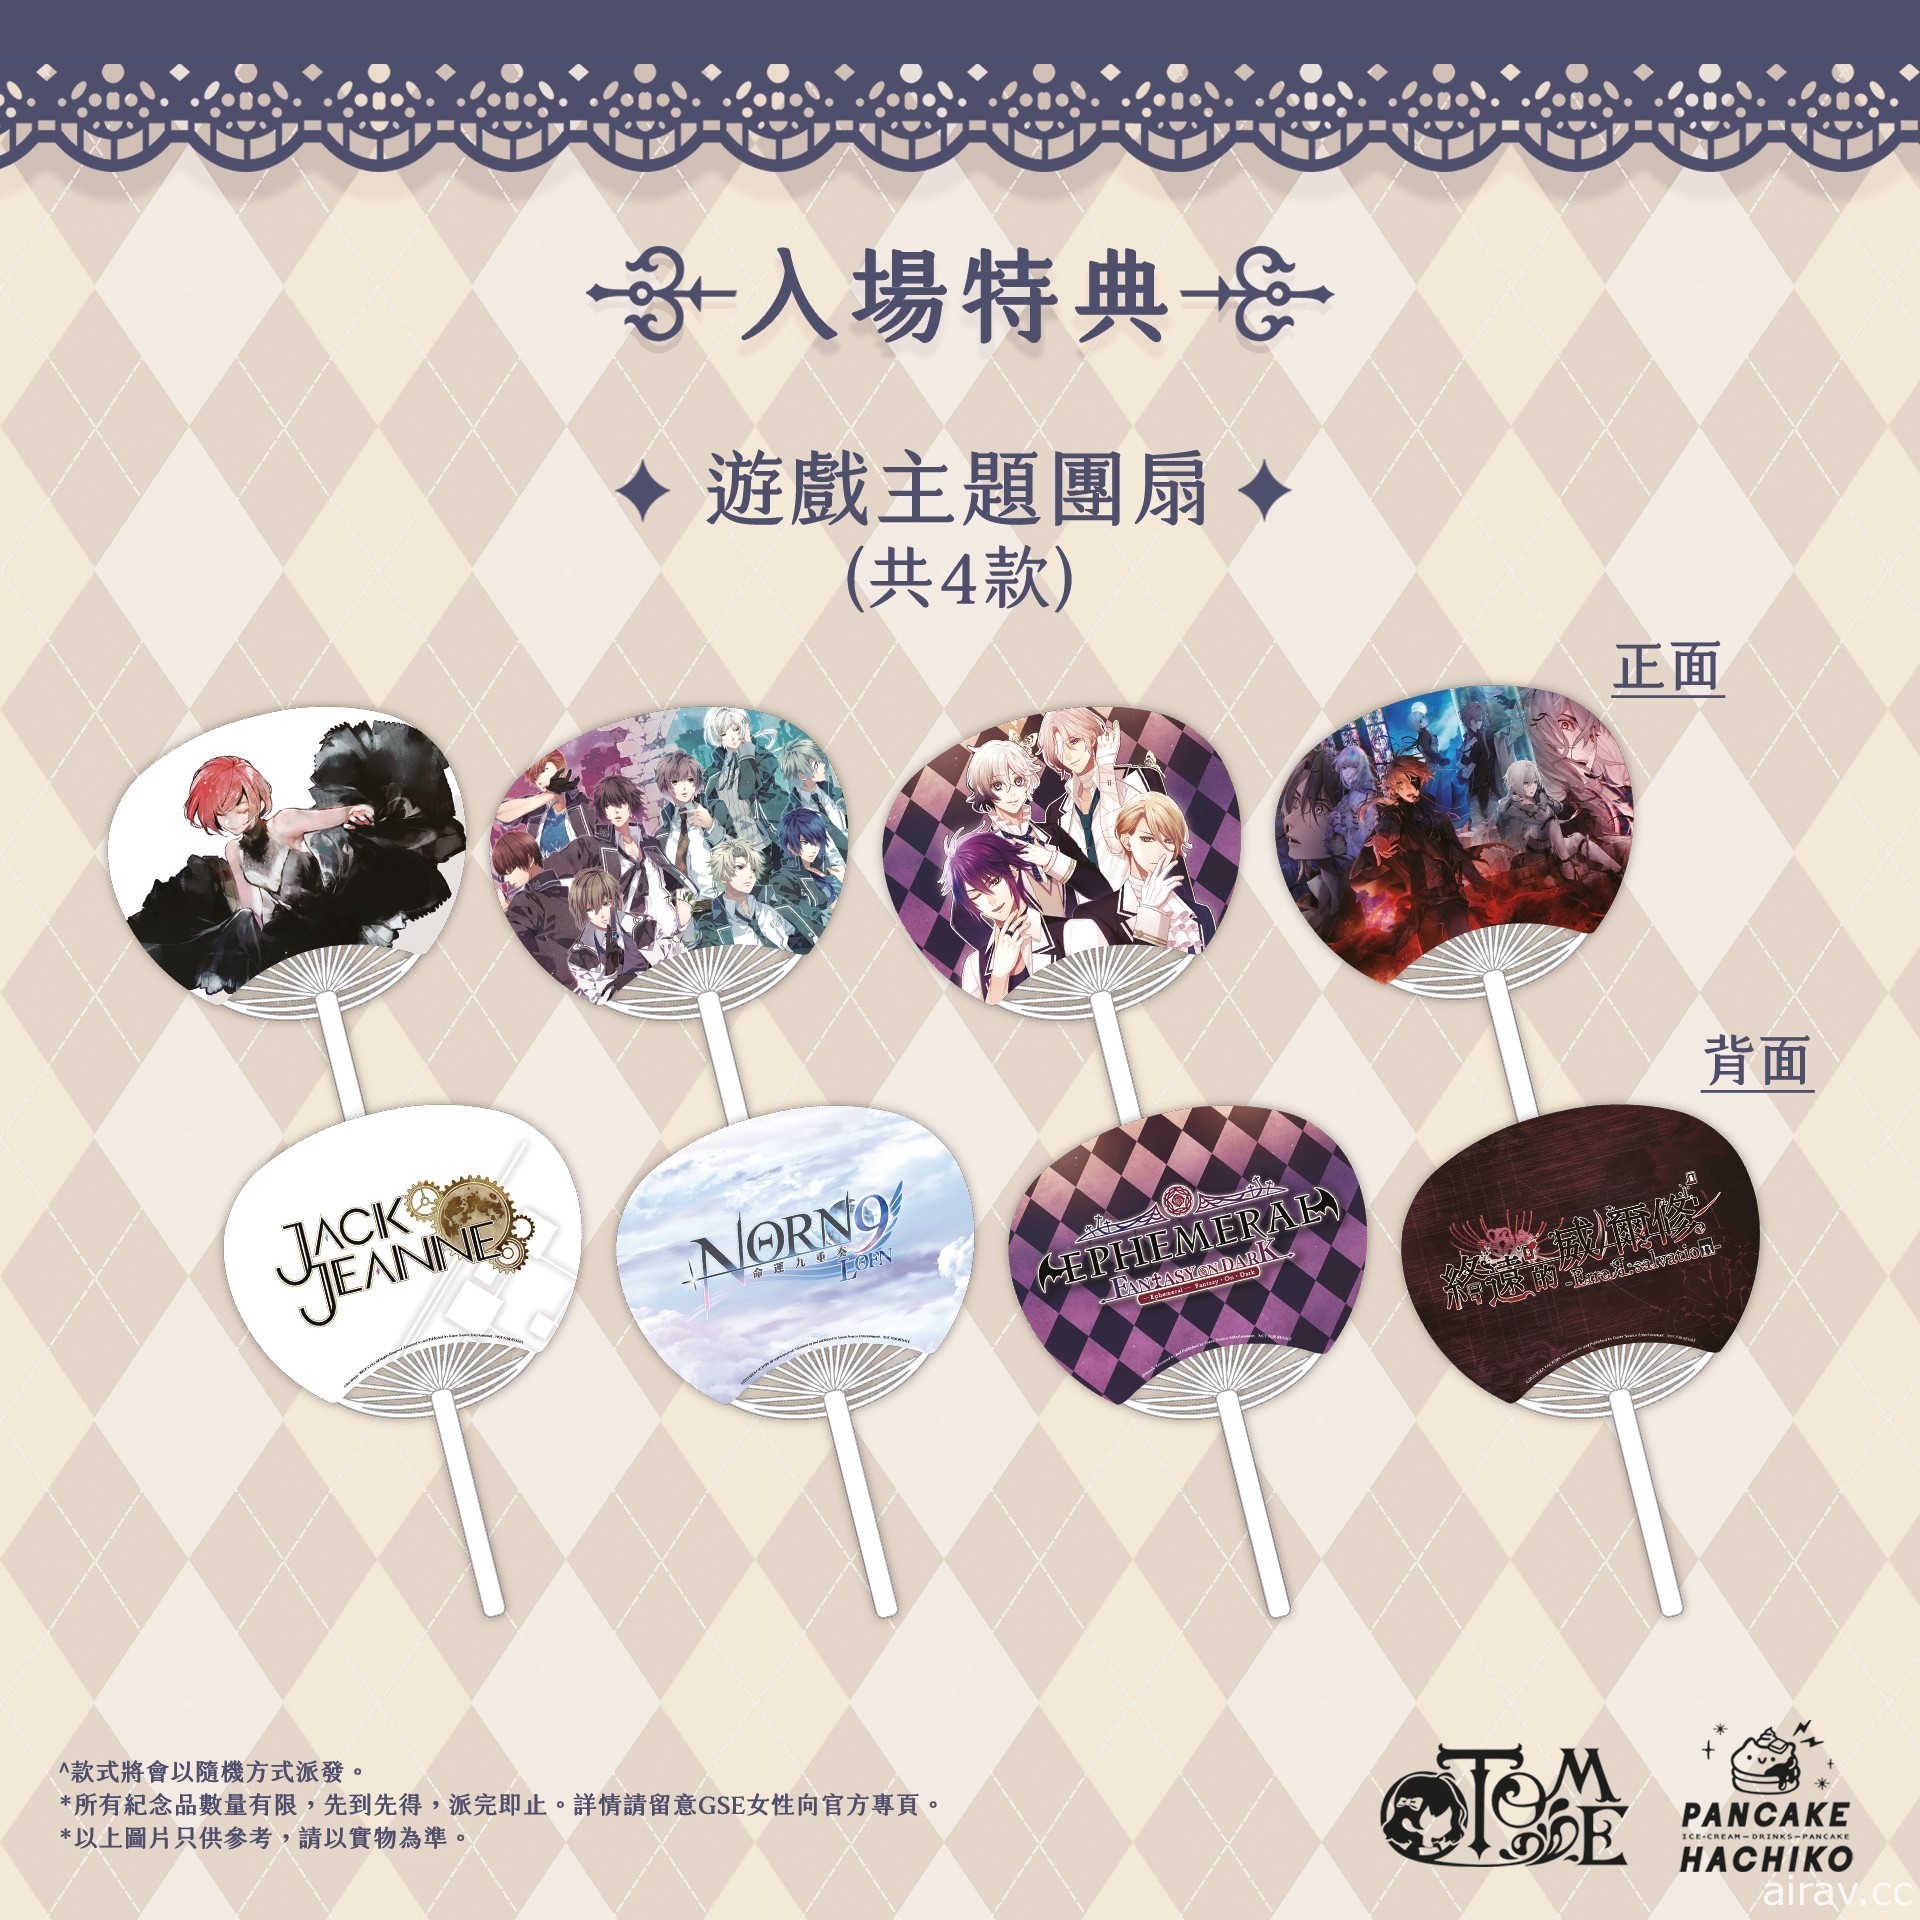 乙女主題 CAFE 活動 GSE Otome × Pancake Hachiko café 將於 8 月在香港舉行